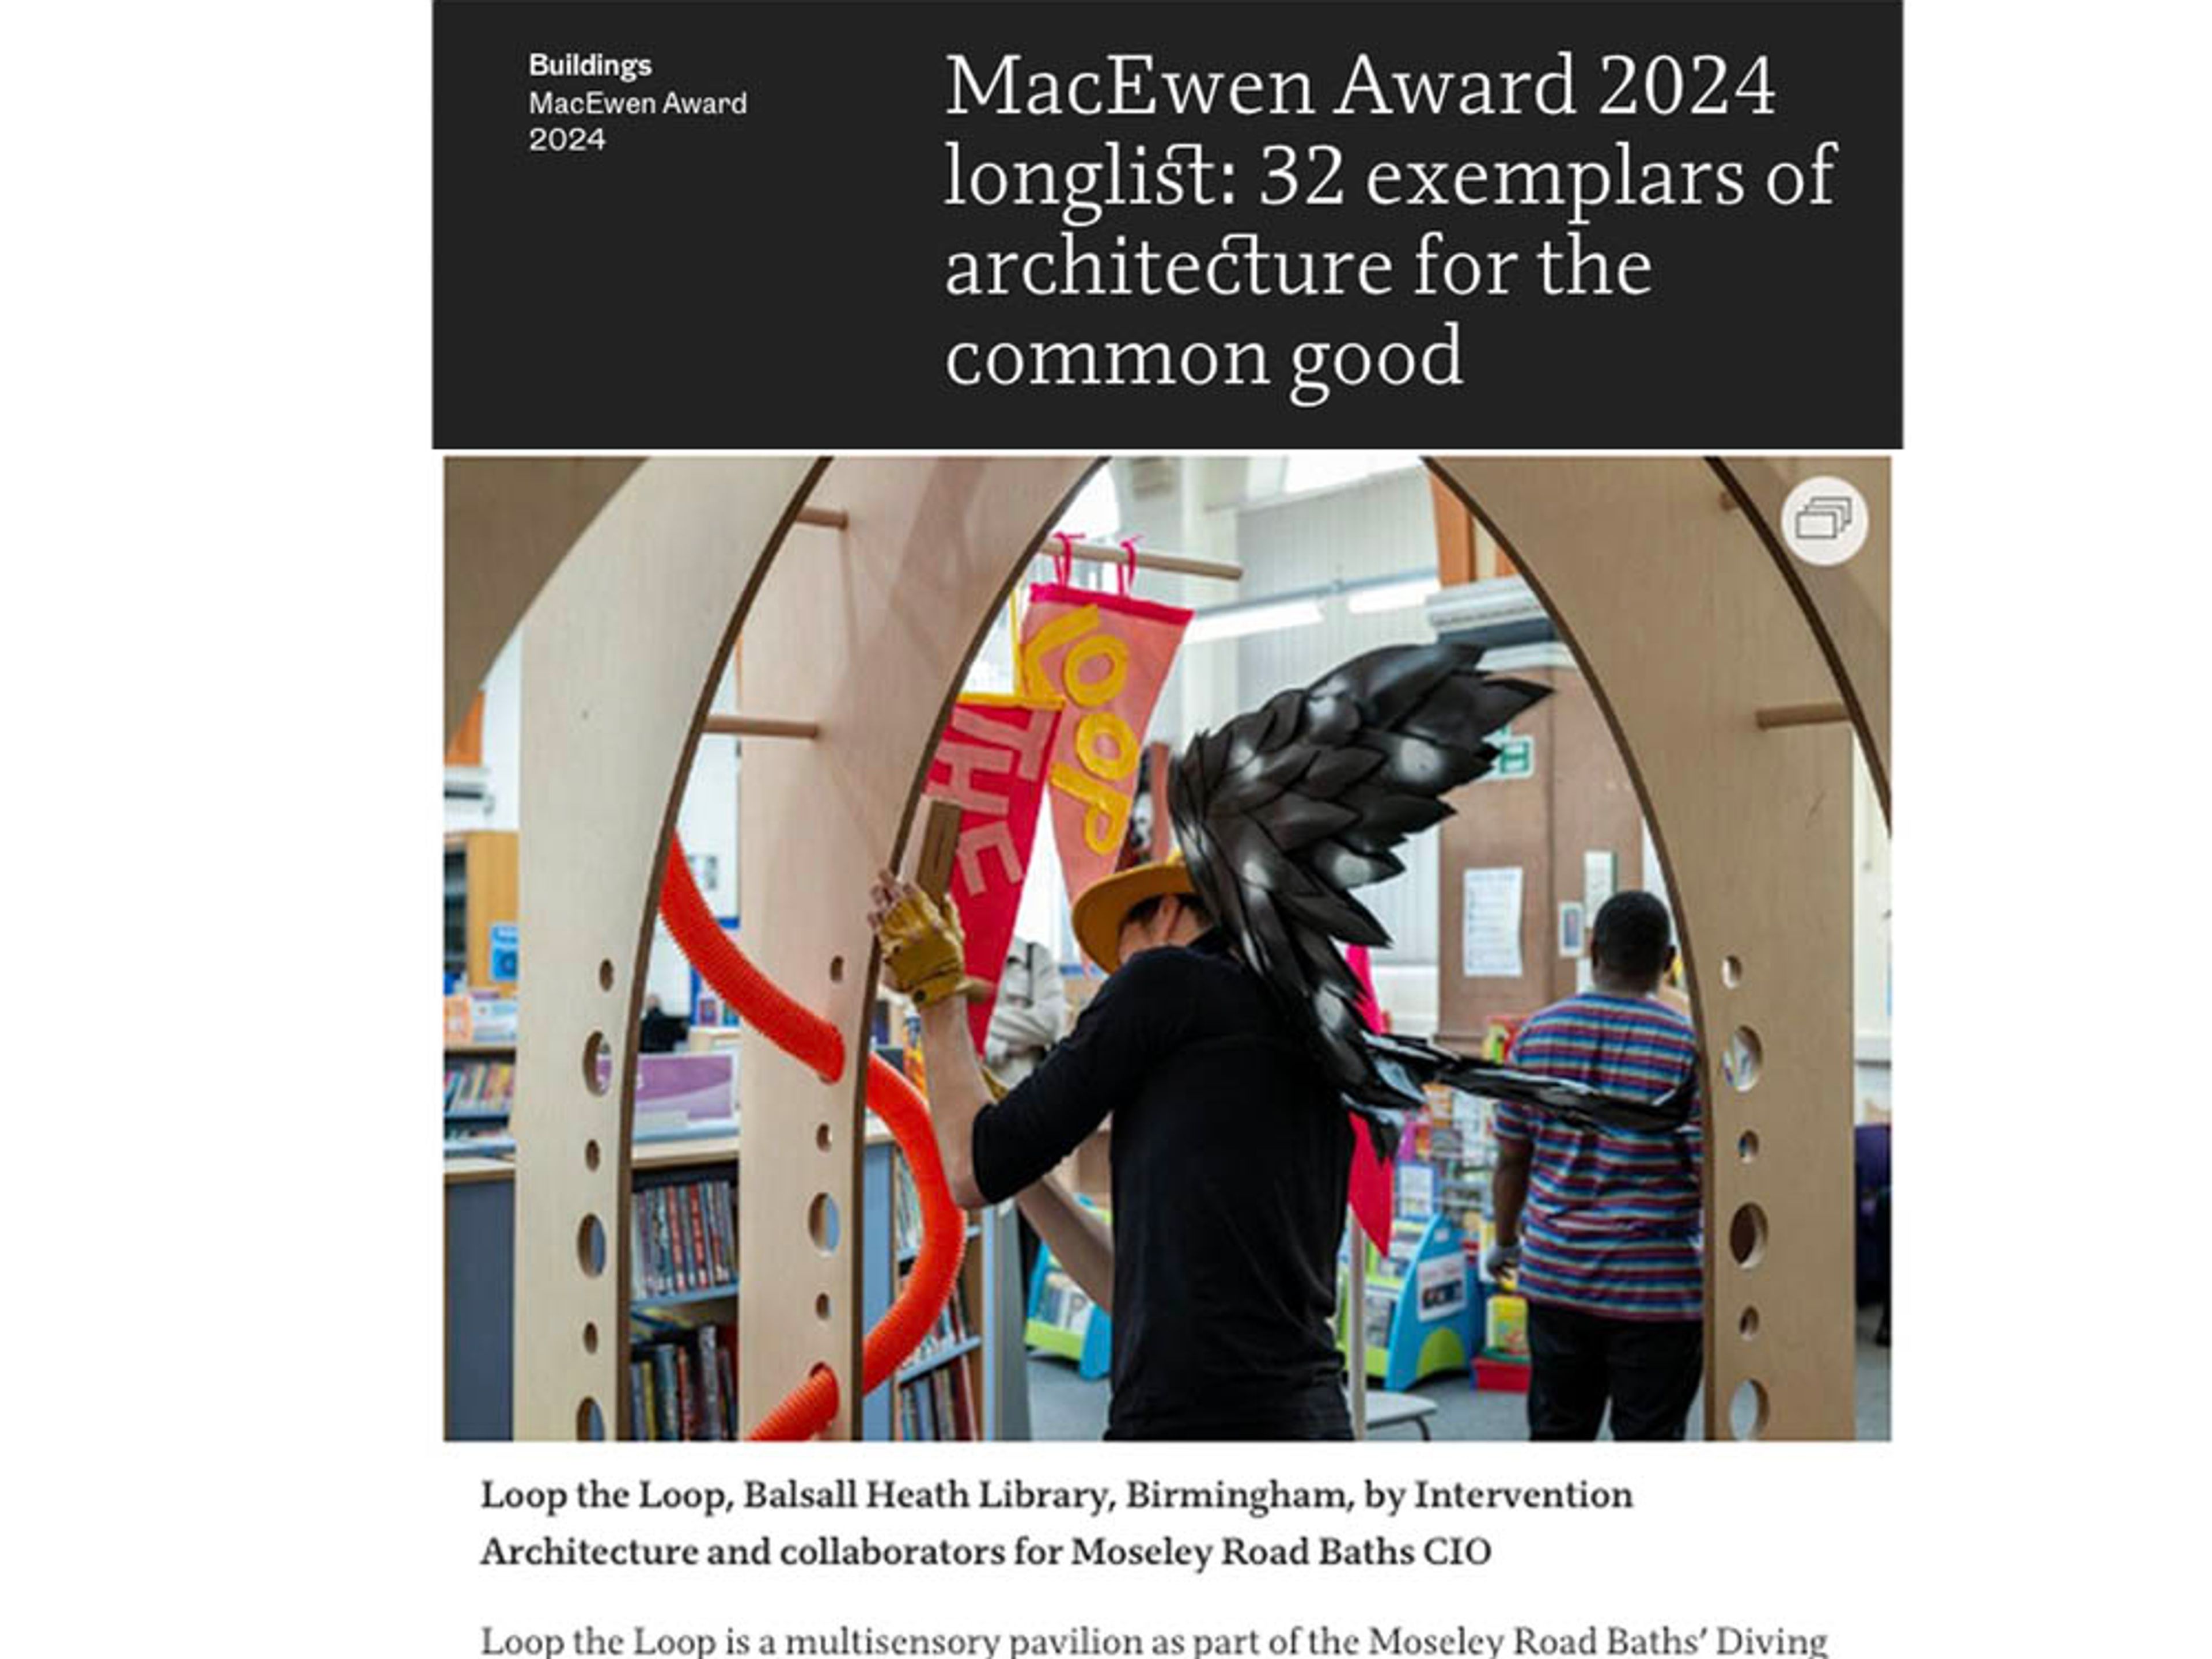 MacEwean Award '24 Longlist